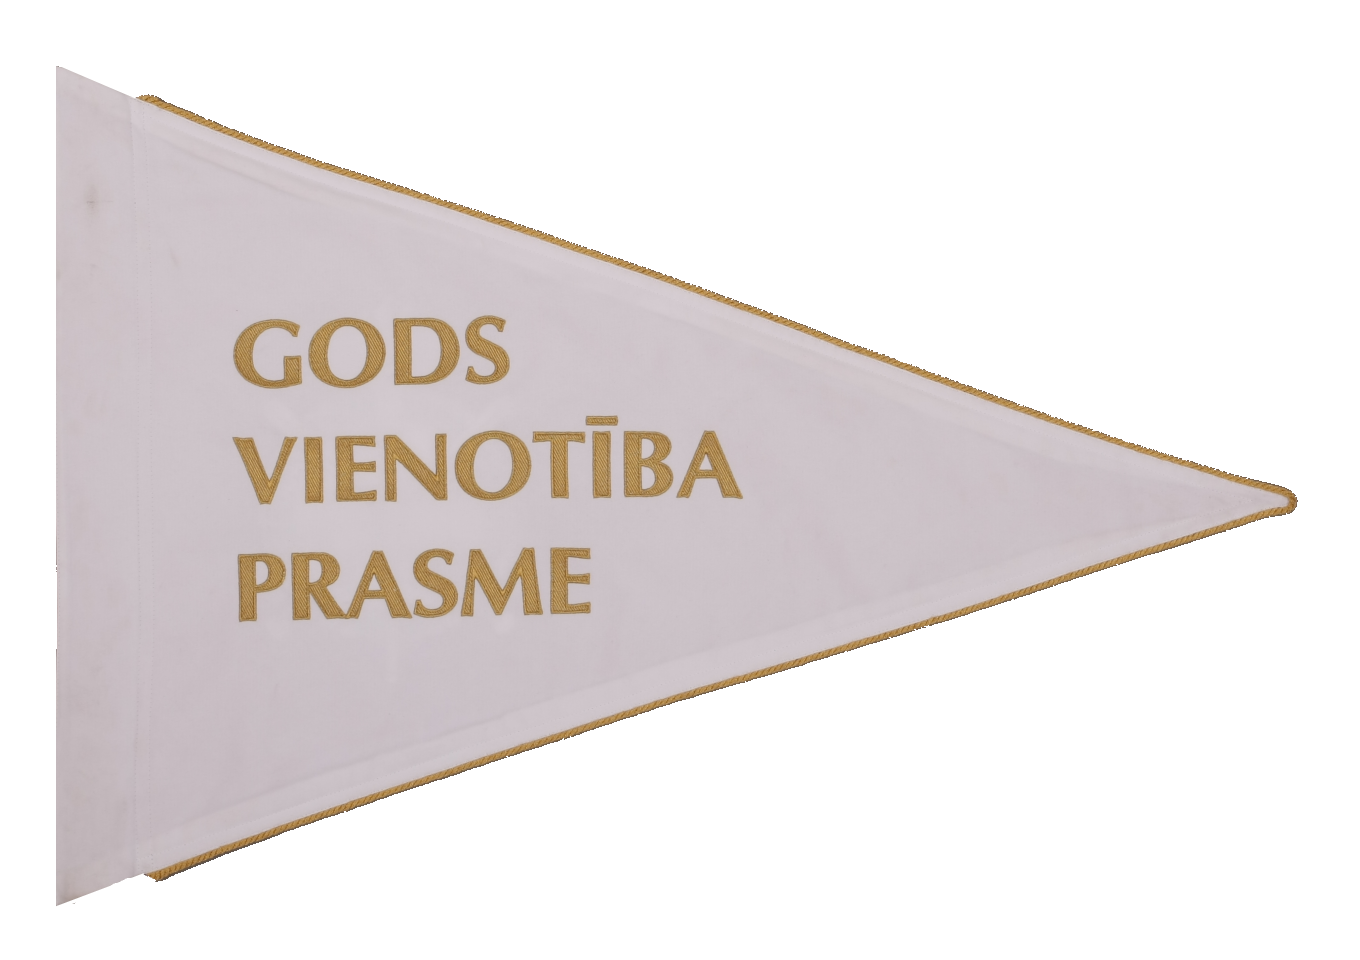 Standarts ir trīsstūra formā, baltā krāsā ar zelta maliņu, centrā ir rakstīts "GODS VIENOTĪBA PRASME".